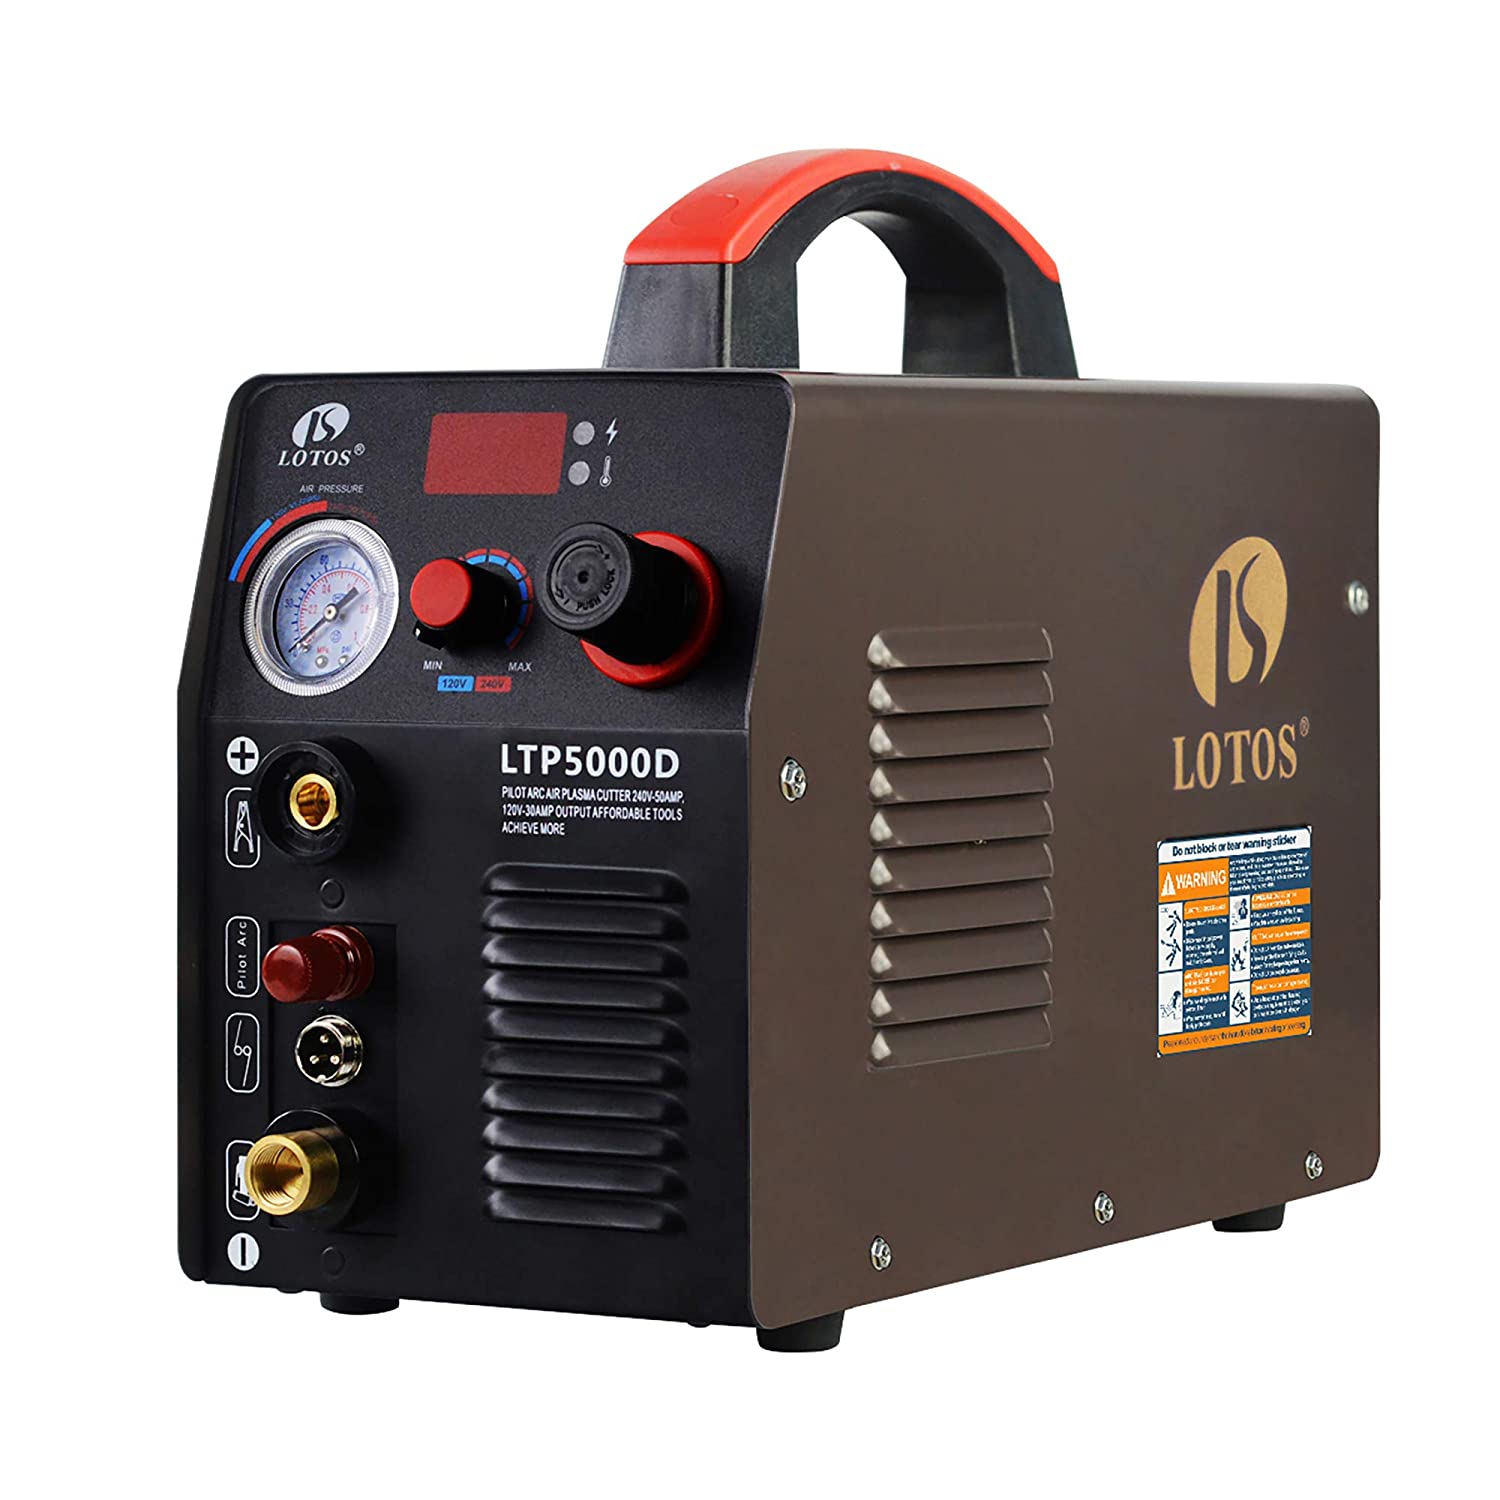 Lotos Technology LTP5000D 50Amp Non-Touch Pilot Arc Plasma Cutter, Dual Voltage 110V/220V, 1/2 Inch Clean Cut, Brown